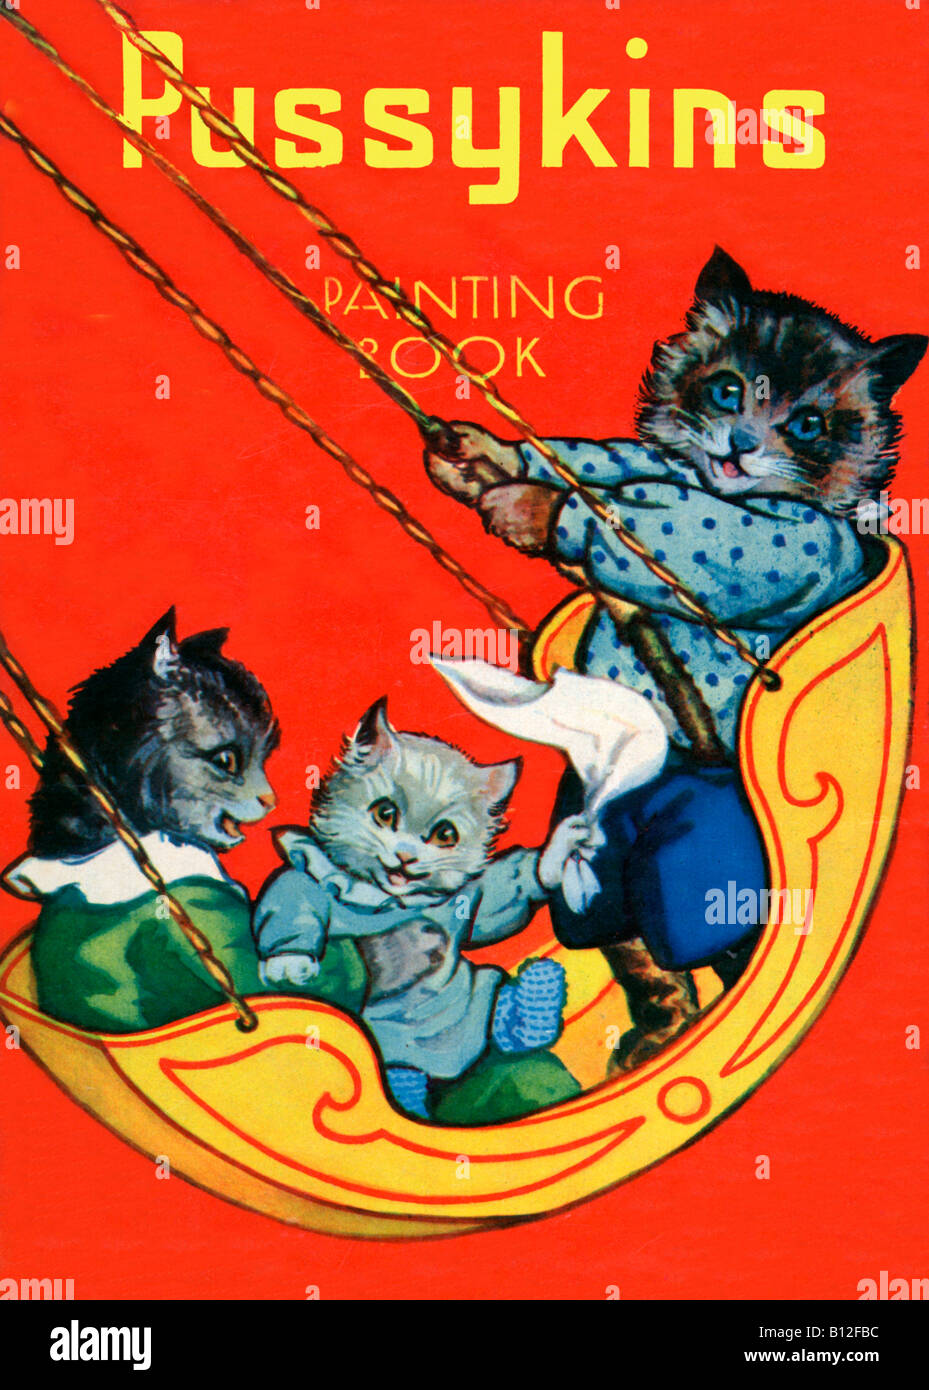 Pussykins Painting Book la couverture d'un livre de coloriage pour enfants des années 1920 avec les chats s'amusant sur une balançoire Banque D'Images